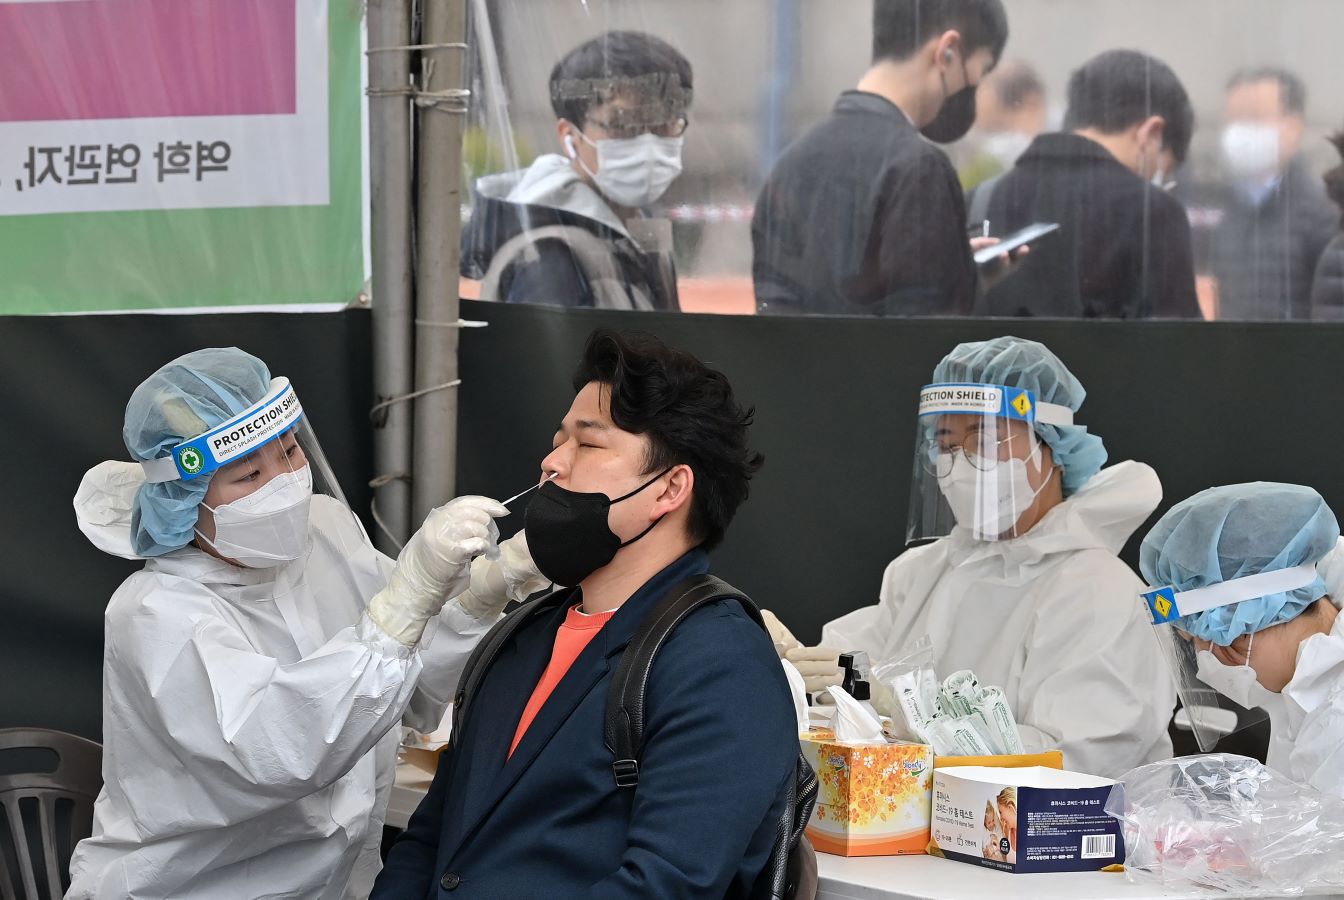 الإصابات اليومية بكورونا تتخطى 80 ألف حالة في كوريا الجنوبية